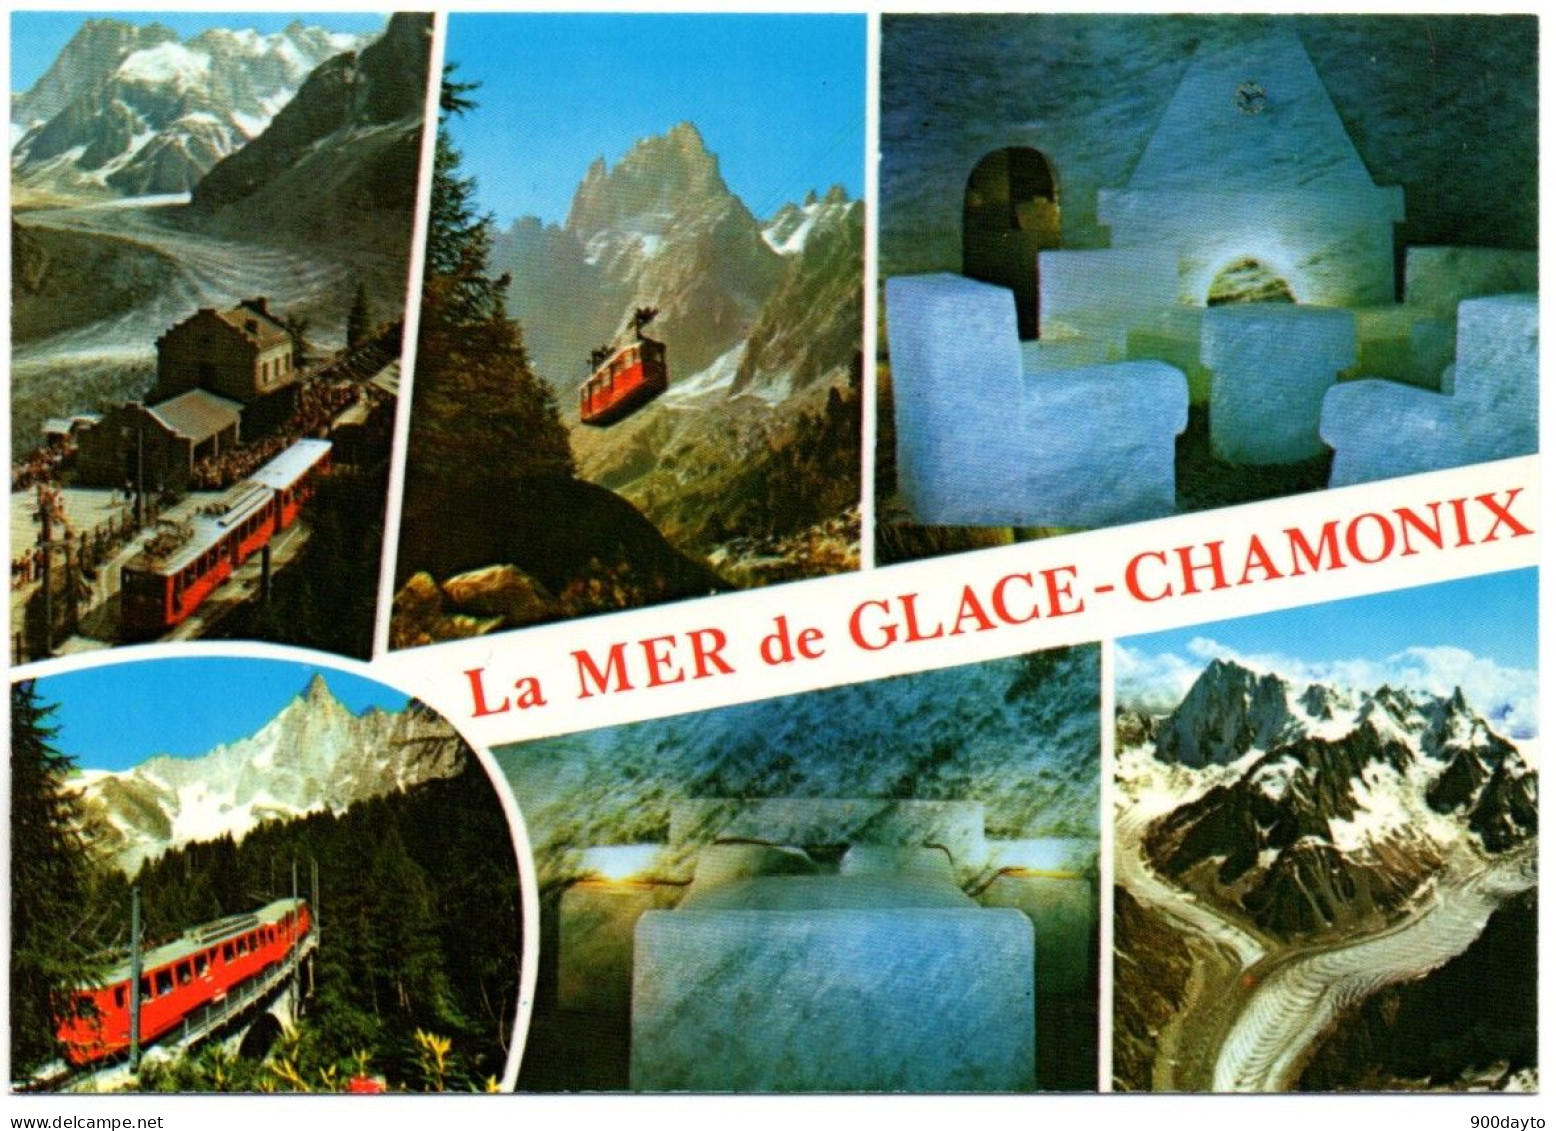 CHAMONIX-MONT-BLANC. Première Ville Olympique D'hiver (1924). La Mer De Glace. - Chamonix-Mont-Blanc